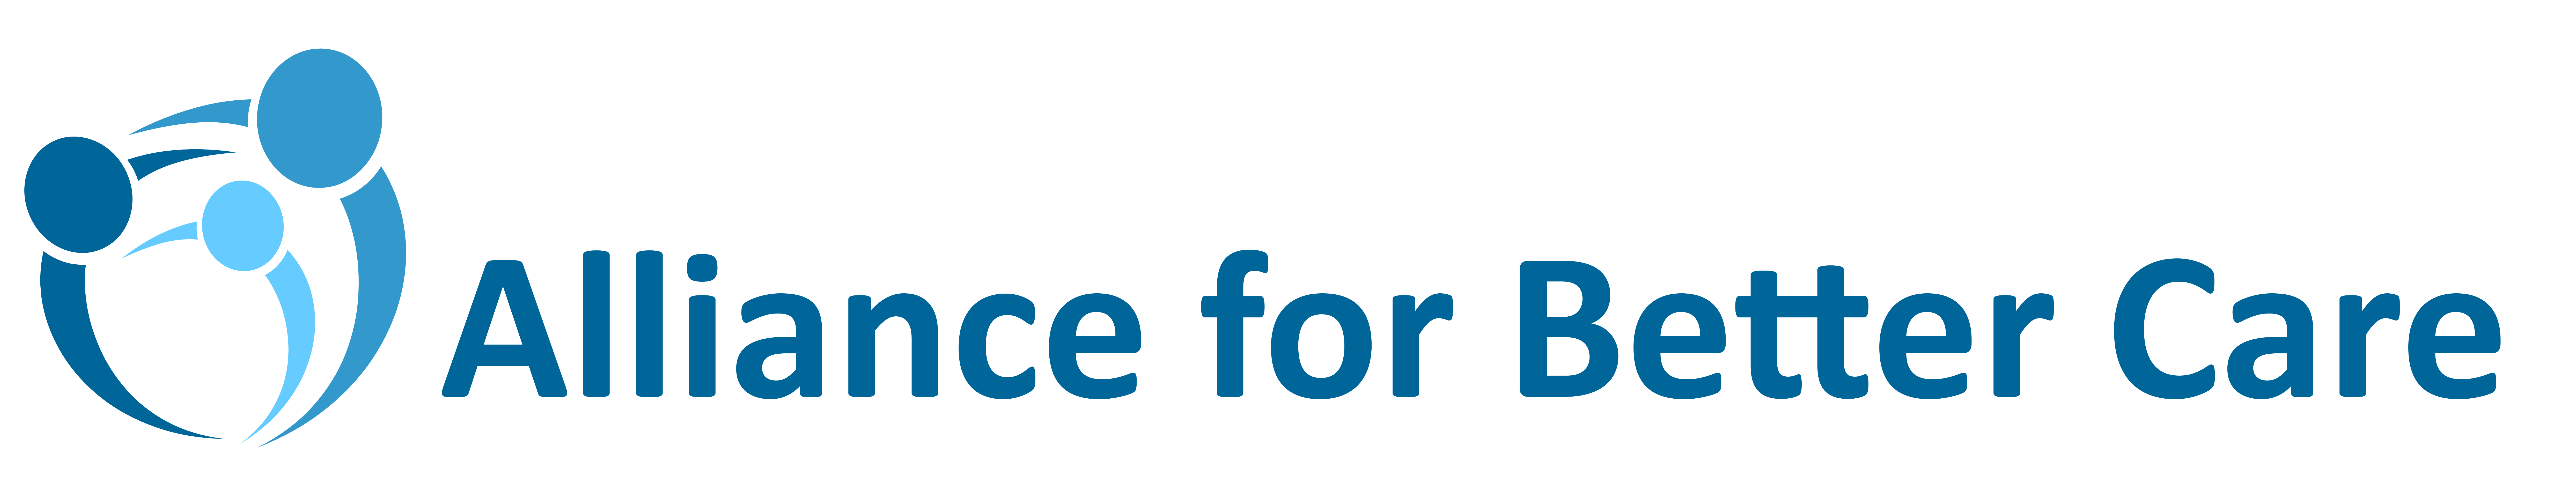 Alliance for Better Care logo